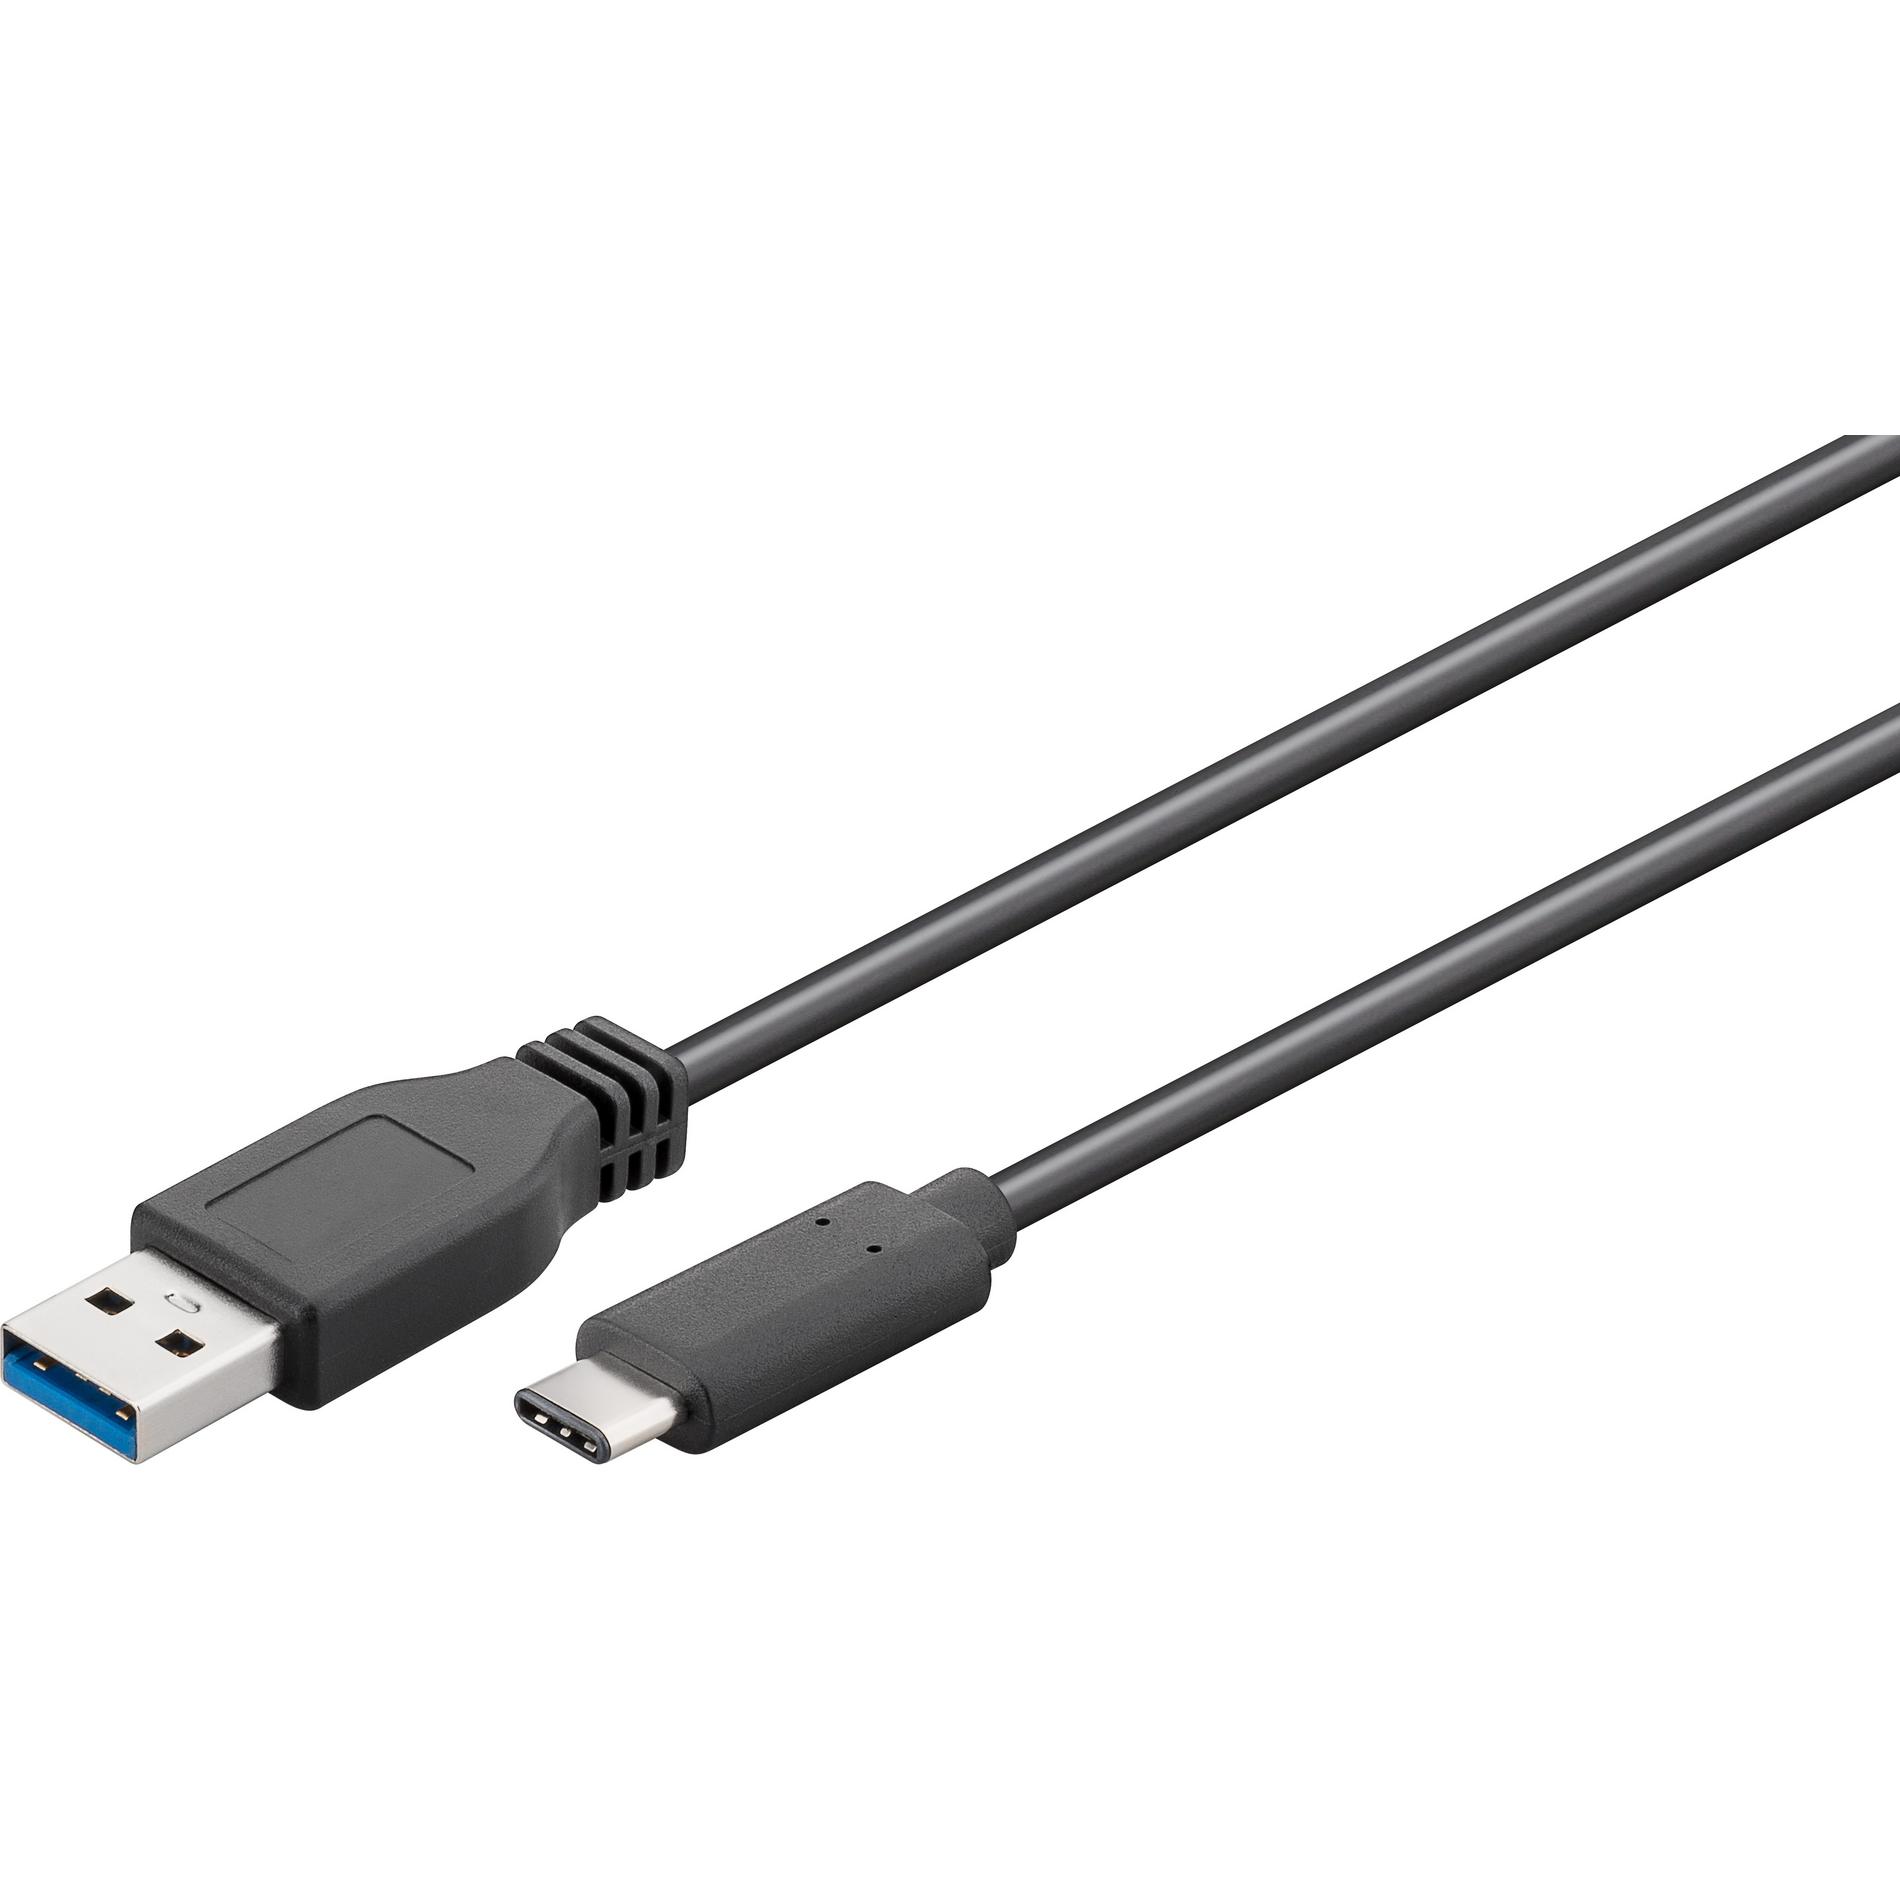 CÂBLE USB-C (3.0), USB-A / USB-C, M/M, 3A, LED, BLEU, 1M